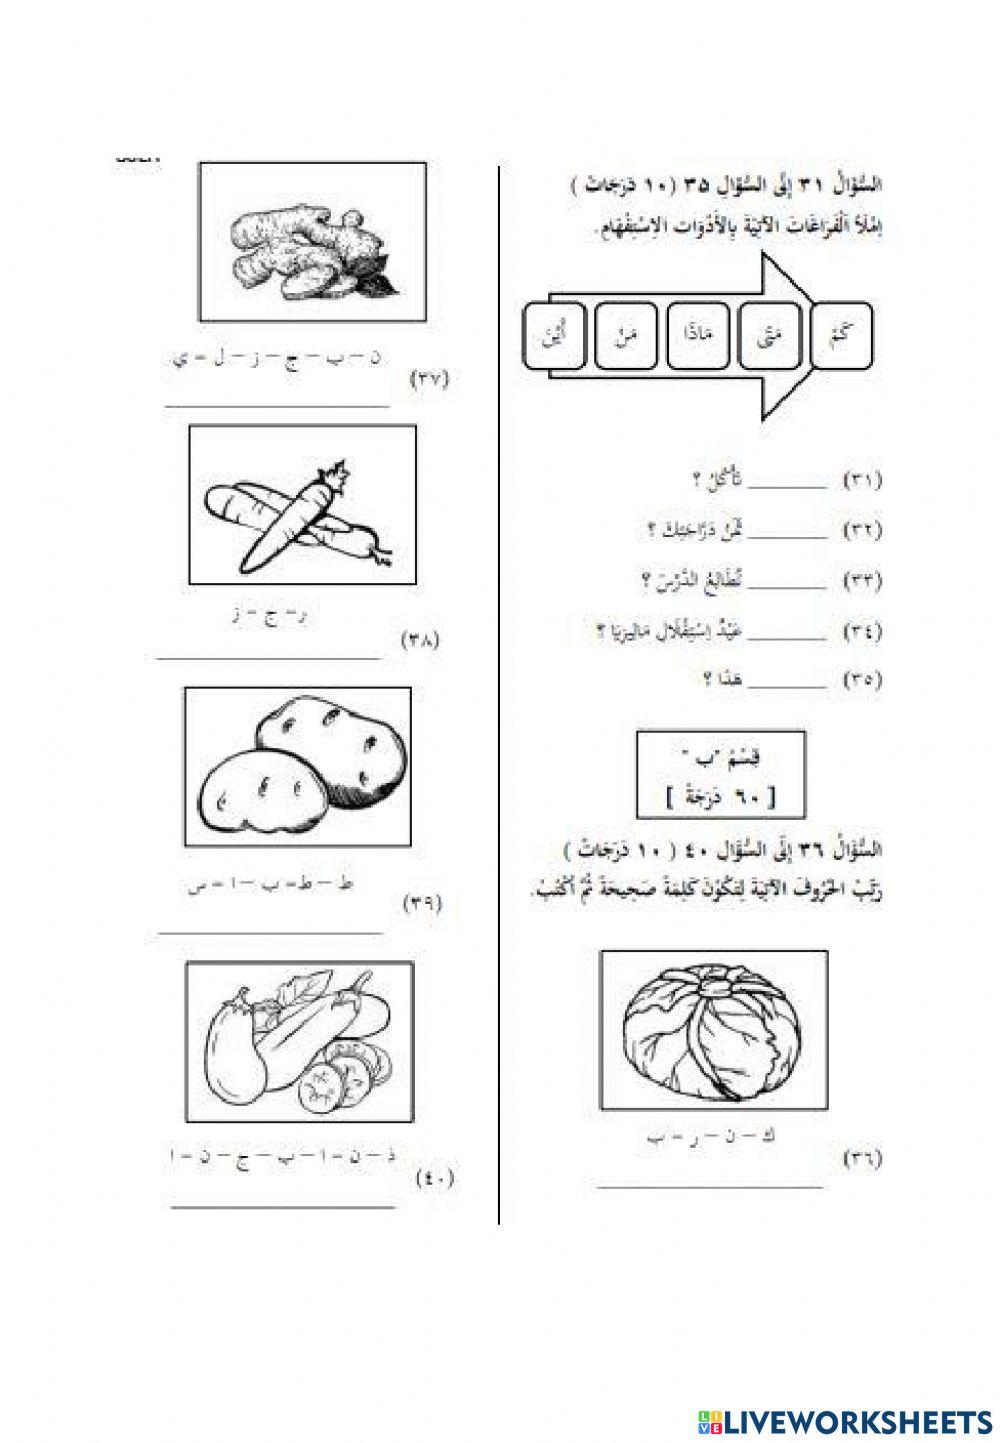 Ulangkaji bahasa arab